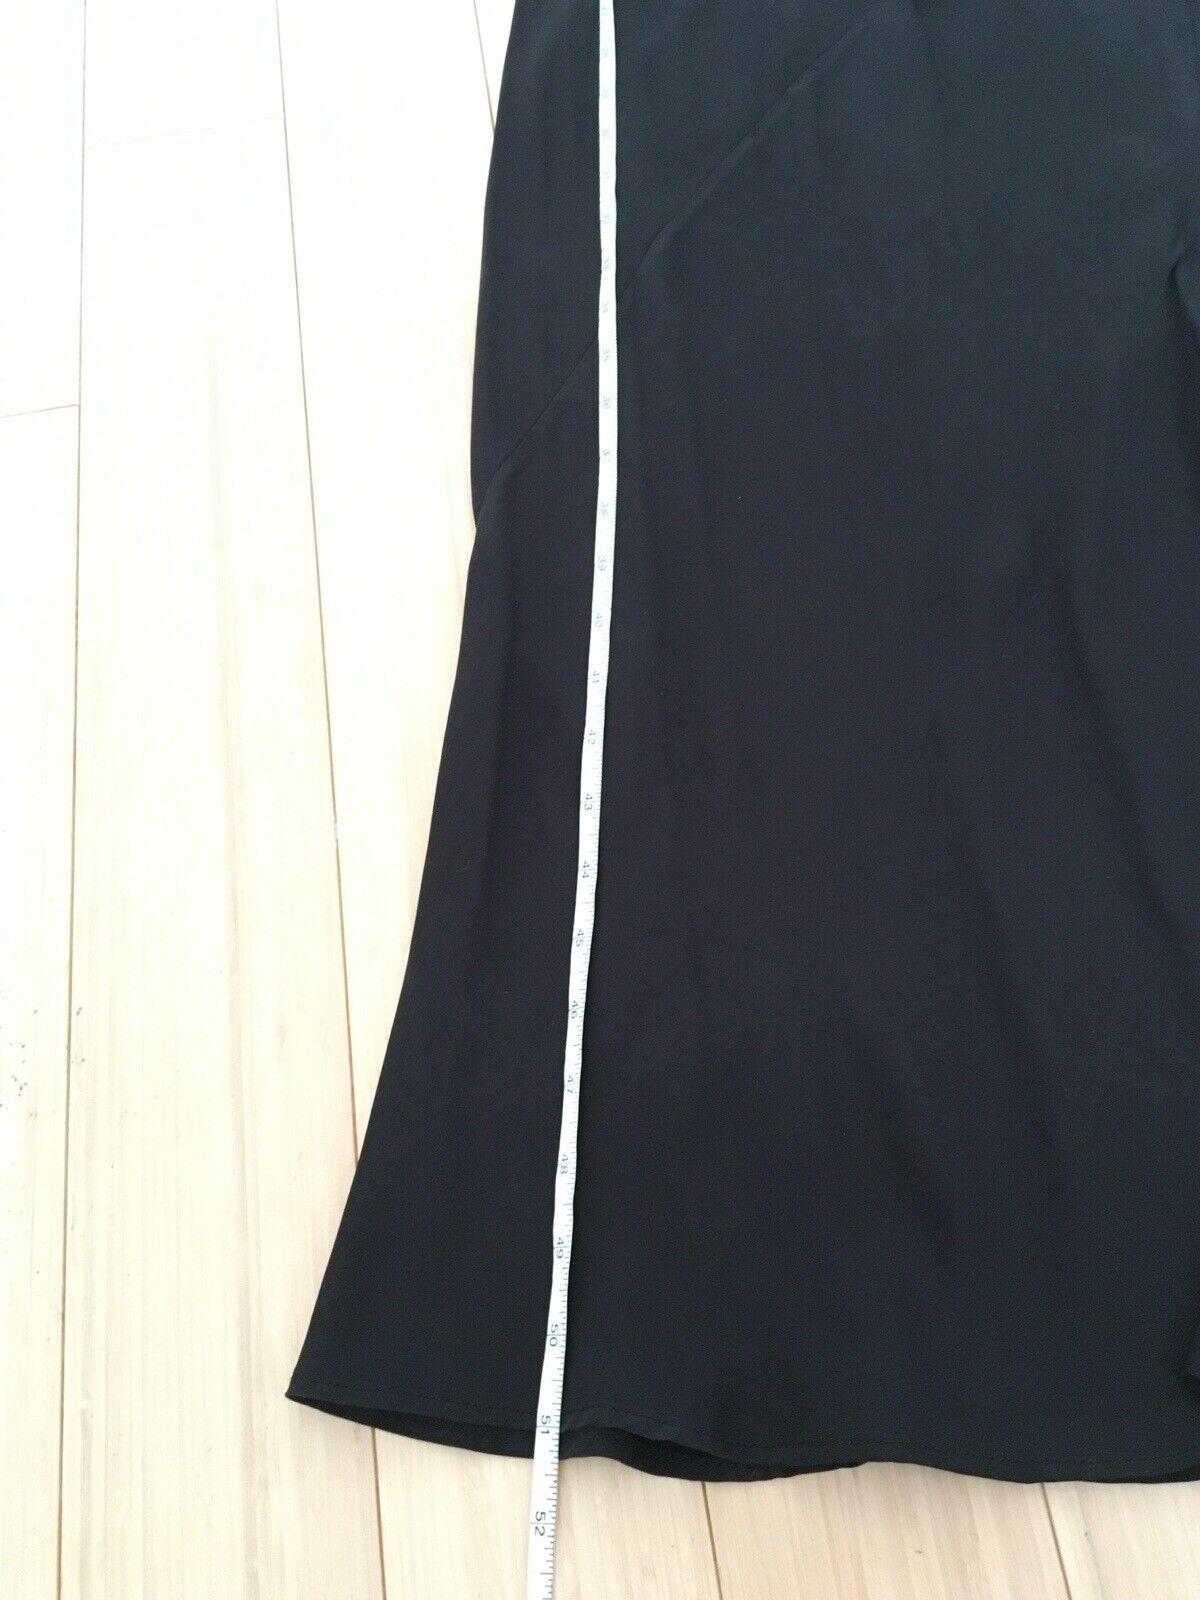 Theory 100% Silk Black Slip Dress 2 XS Small - image 6